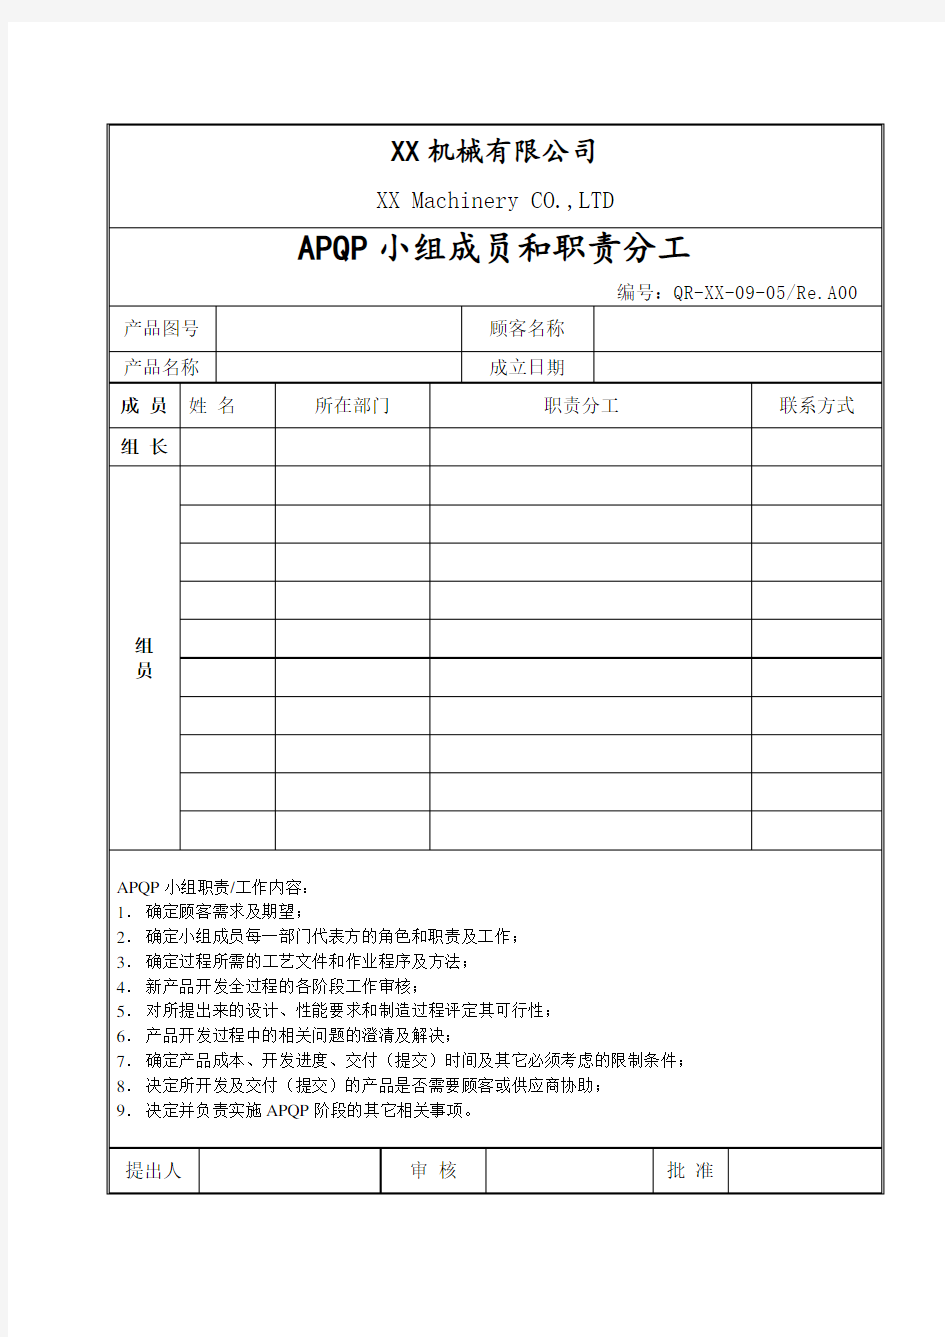 APQP小组成员和职责分工